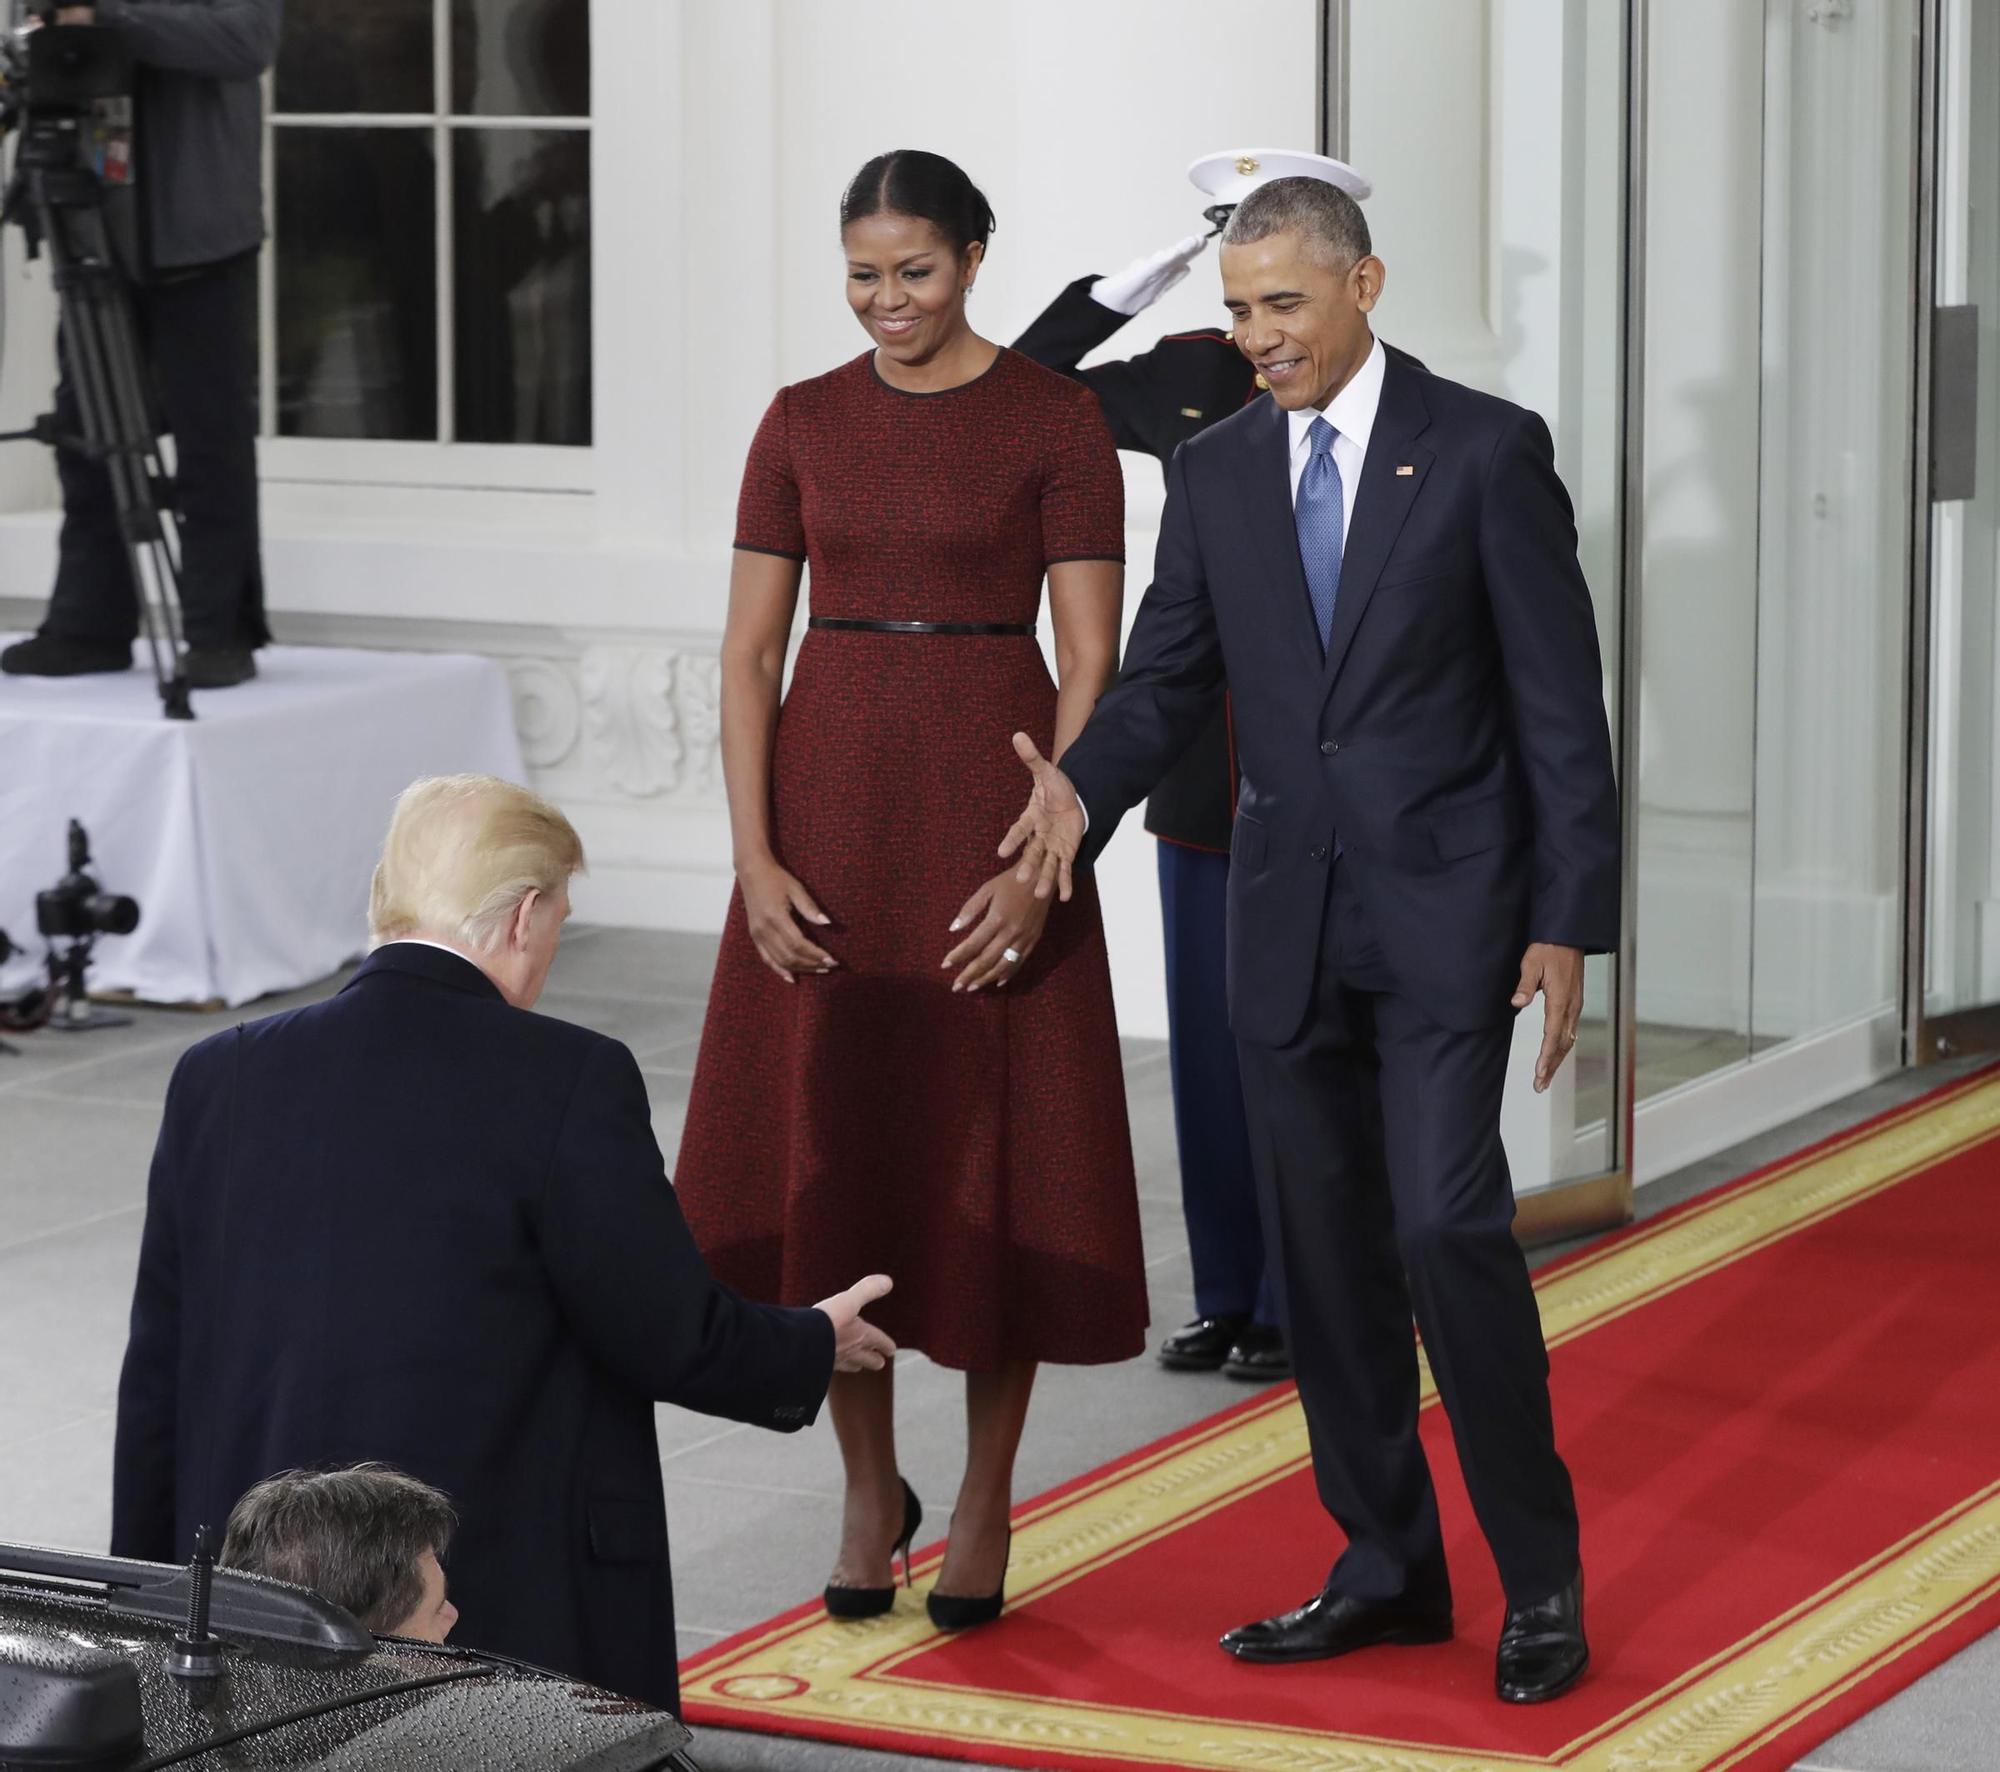 El look de Michelle Obama en la toma de posesión de Donald Trump